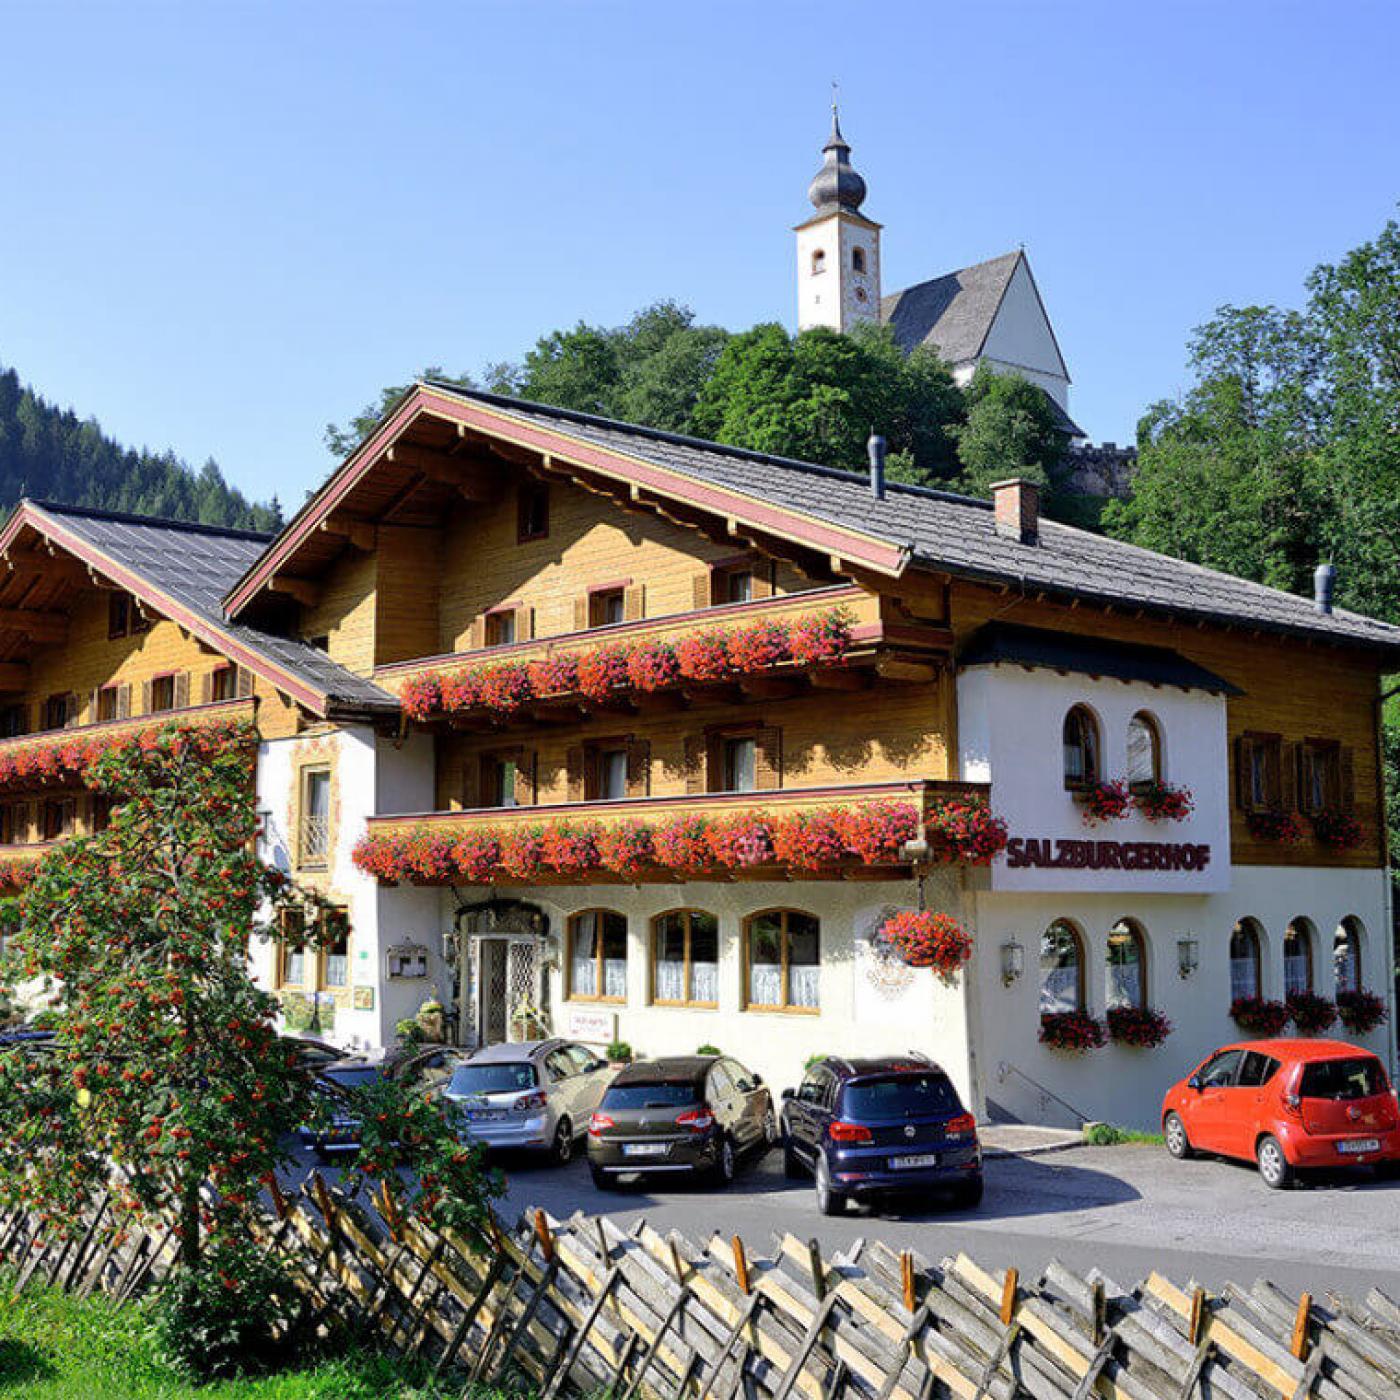 Hotel Salzburger Hof in Dienten am Hochkönig.